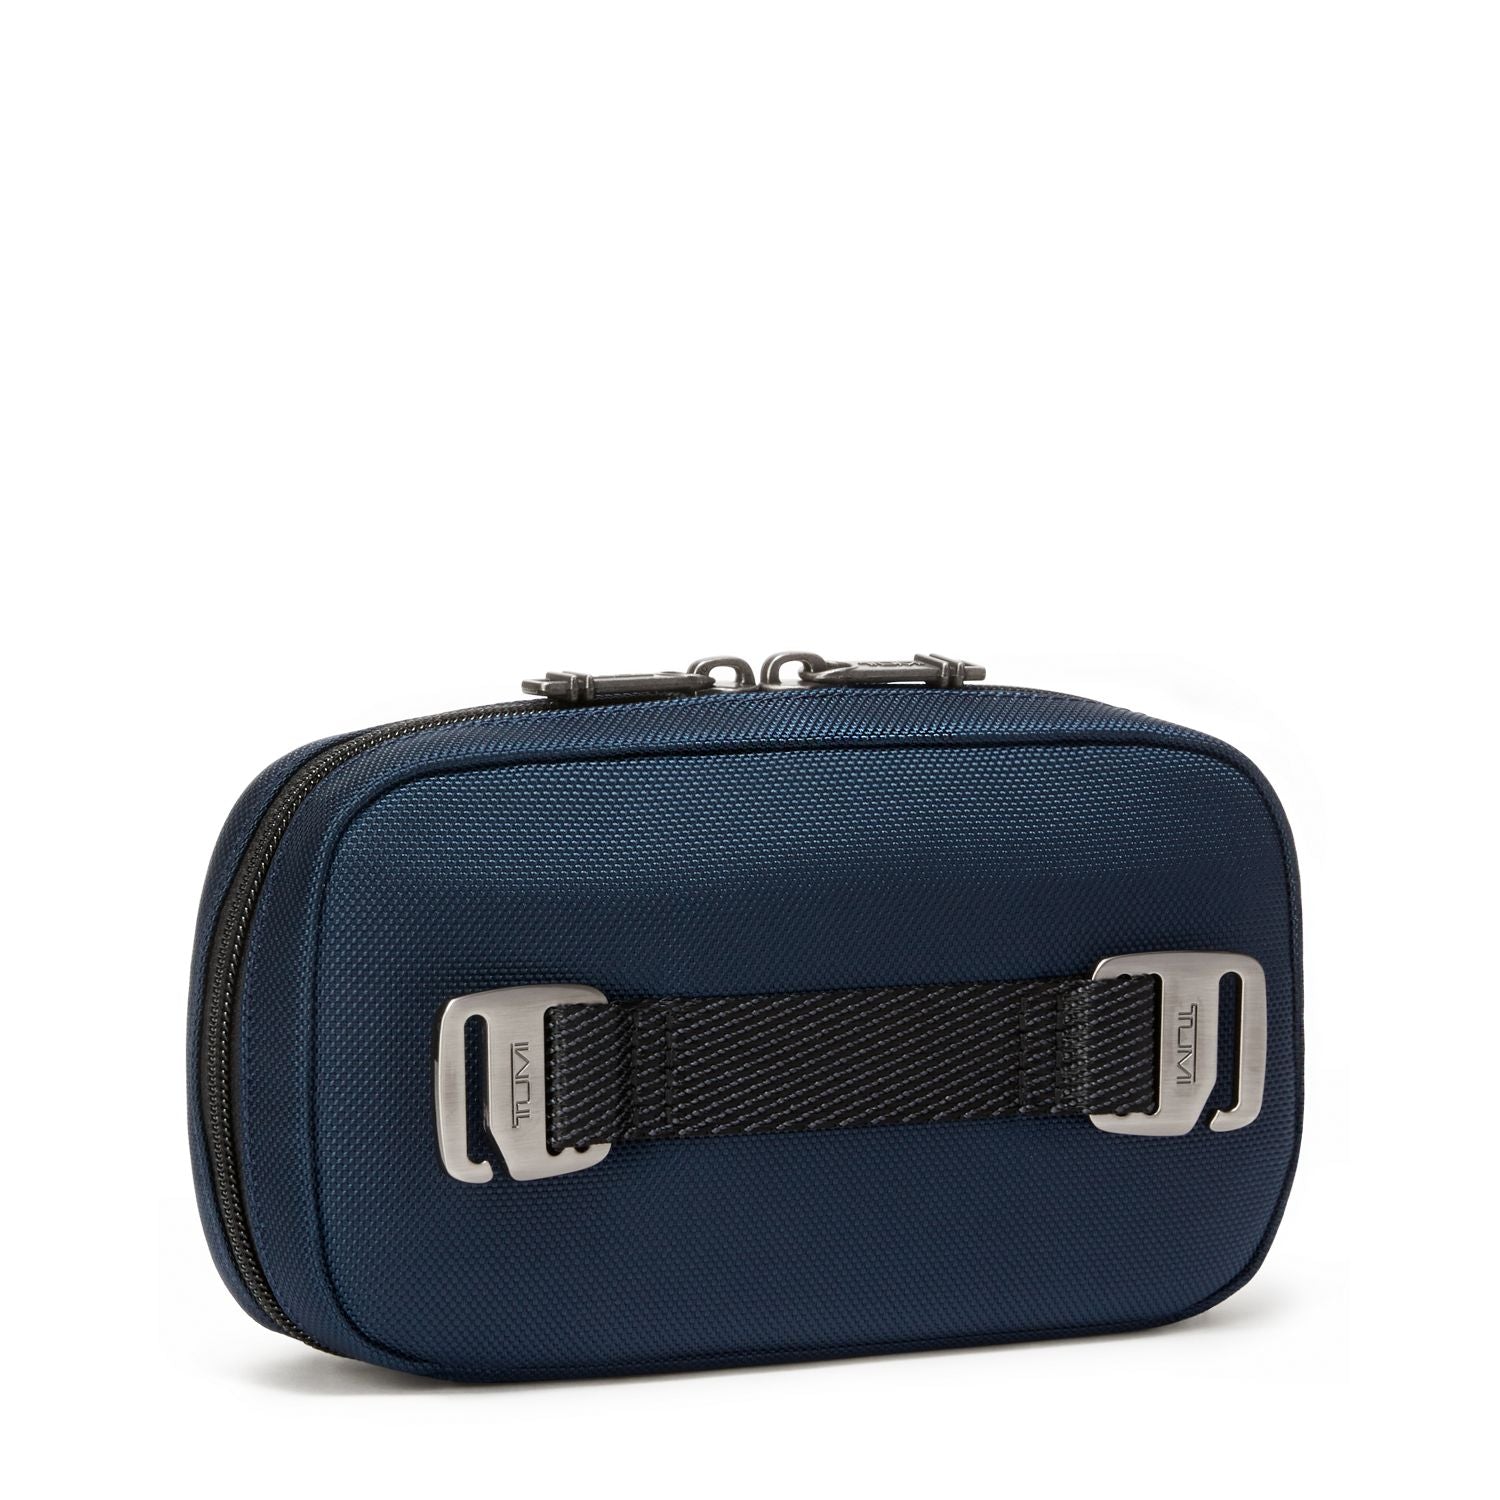 Tumi Travel Access Zip-Around Case – Luggage Online